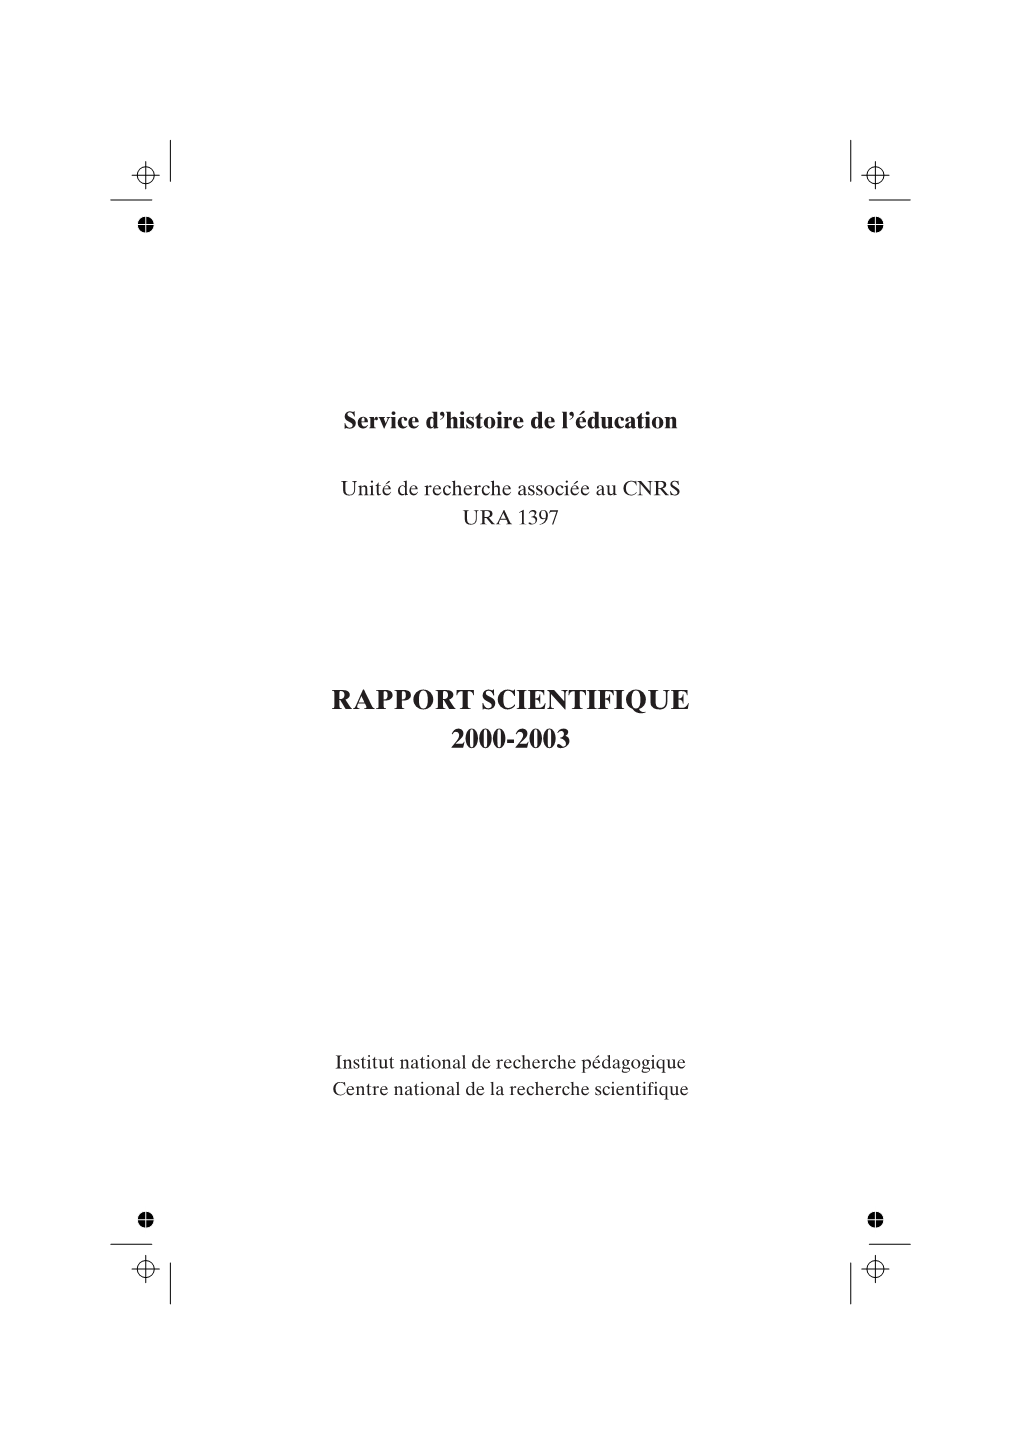 Rapport Scientifique 2000-2003